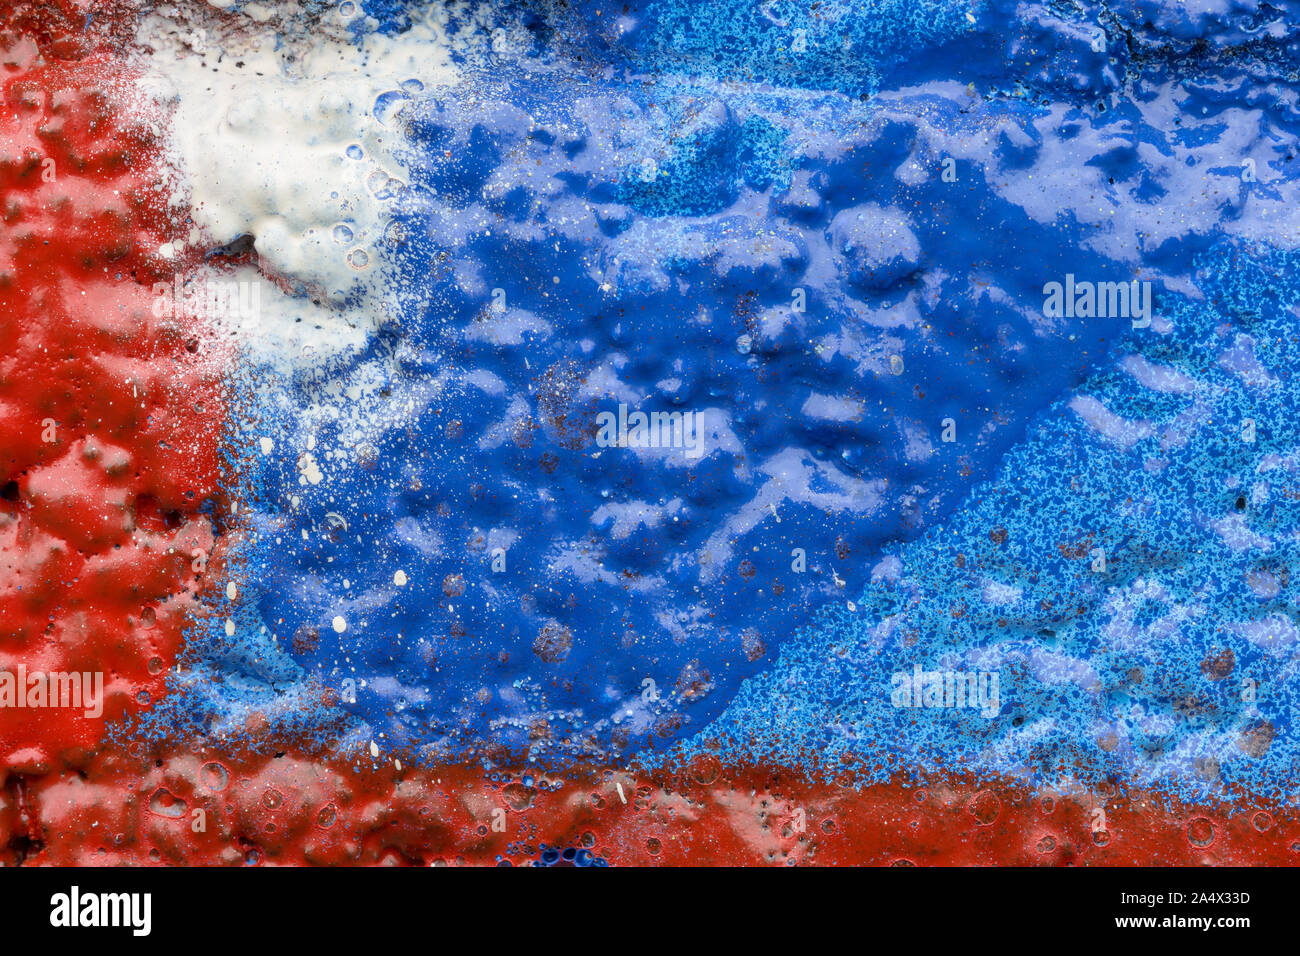 Makro Nahaufnahme von bunten Lacksprays und Spritzer auf einer unebenen Wand. Hohe Auflösung abstract full frame strukturierten Hintergrund. Stockfoto